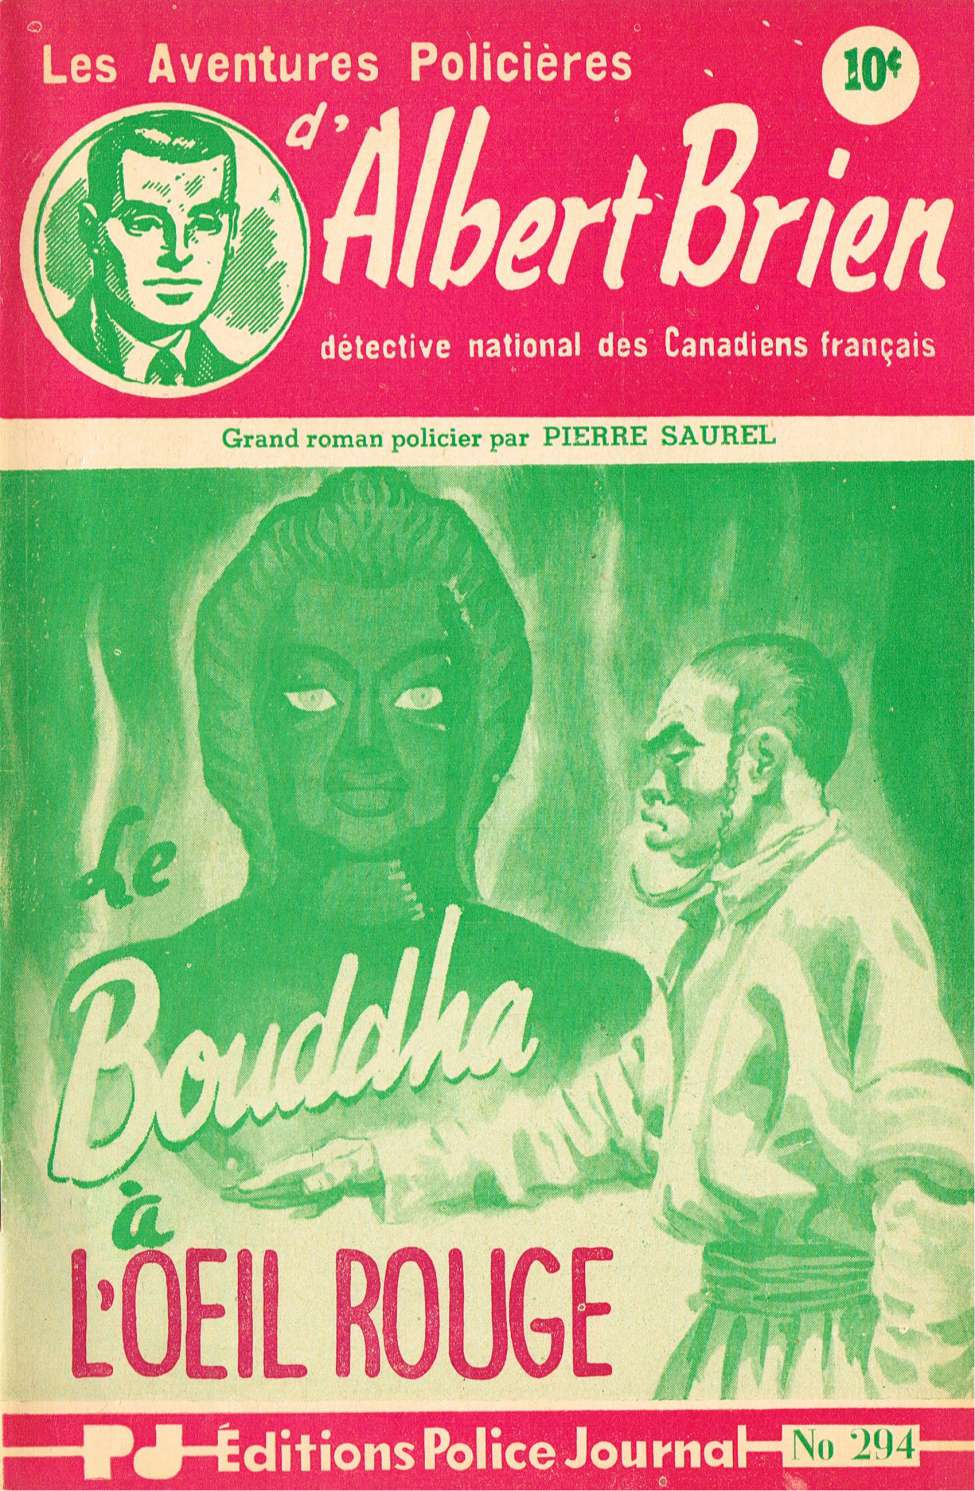 Book Cover For Albert Brien v2 294 - Le bouddha à l'oeil rouge